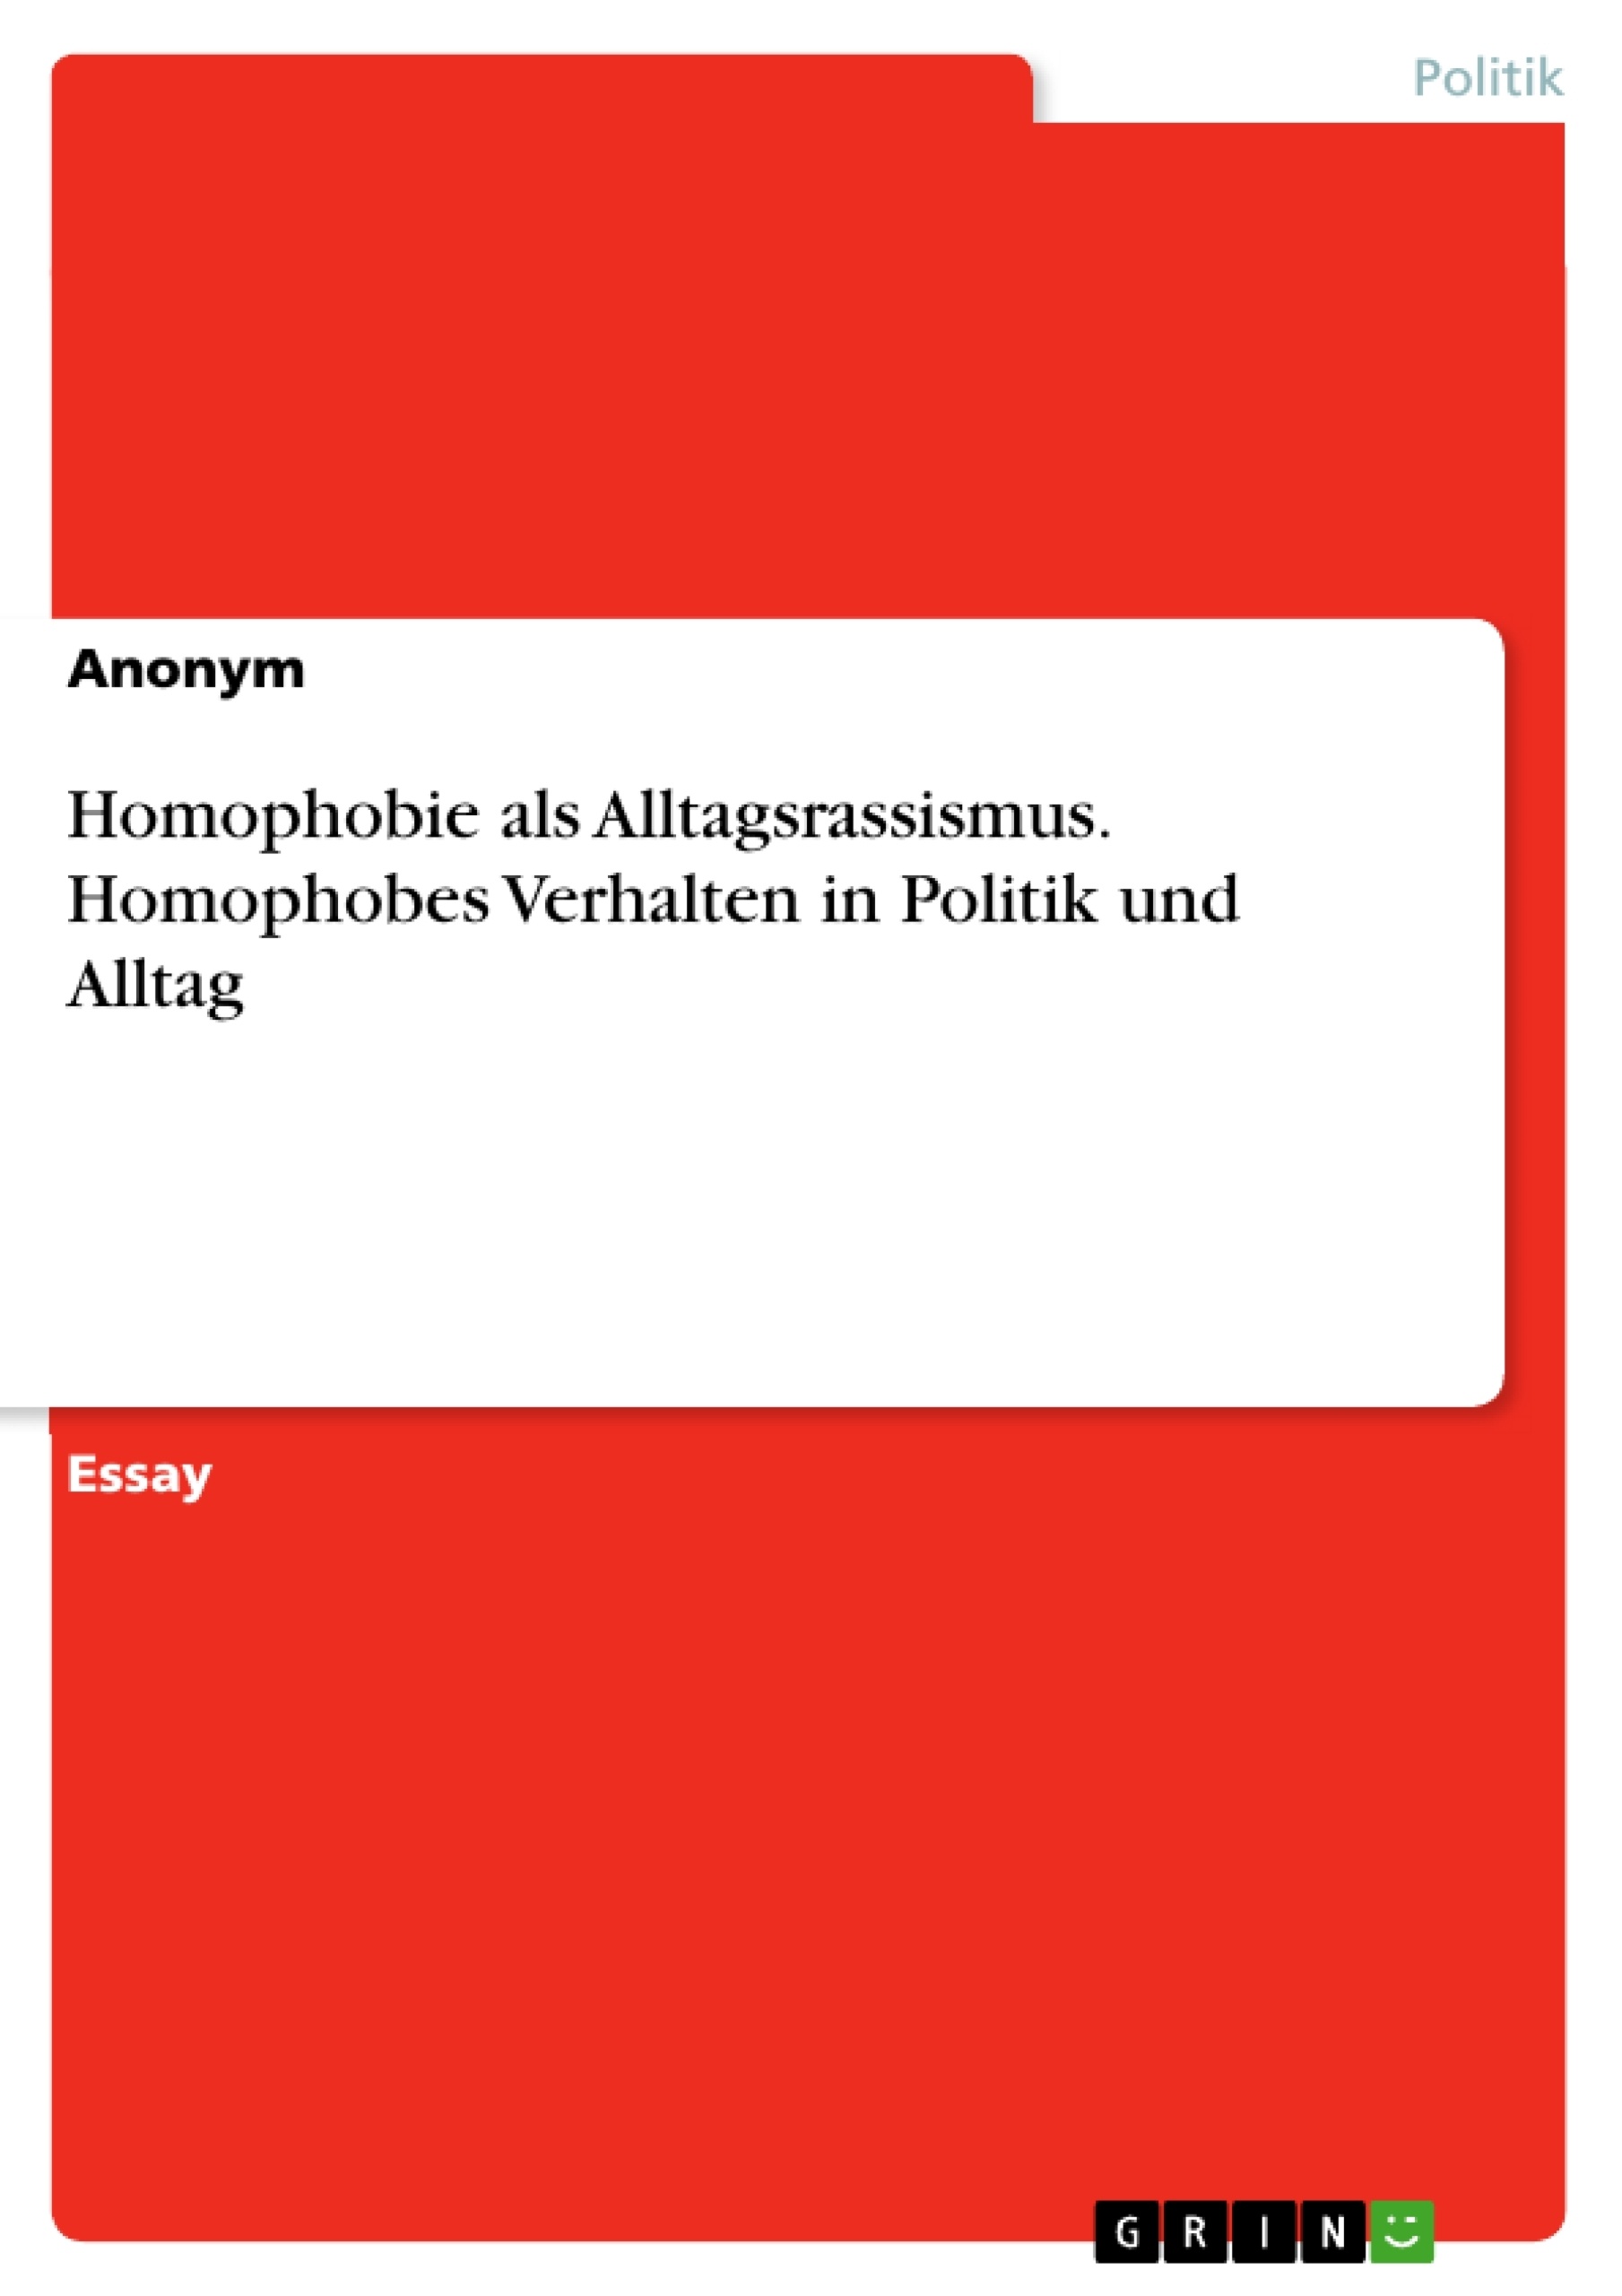 Title: Homophobie als Alltagsrassismus. Homophobes Verhalten in Politik und Alltag